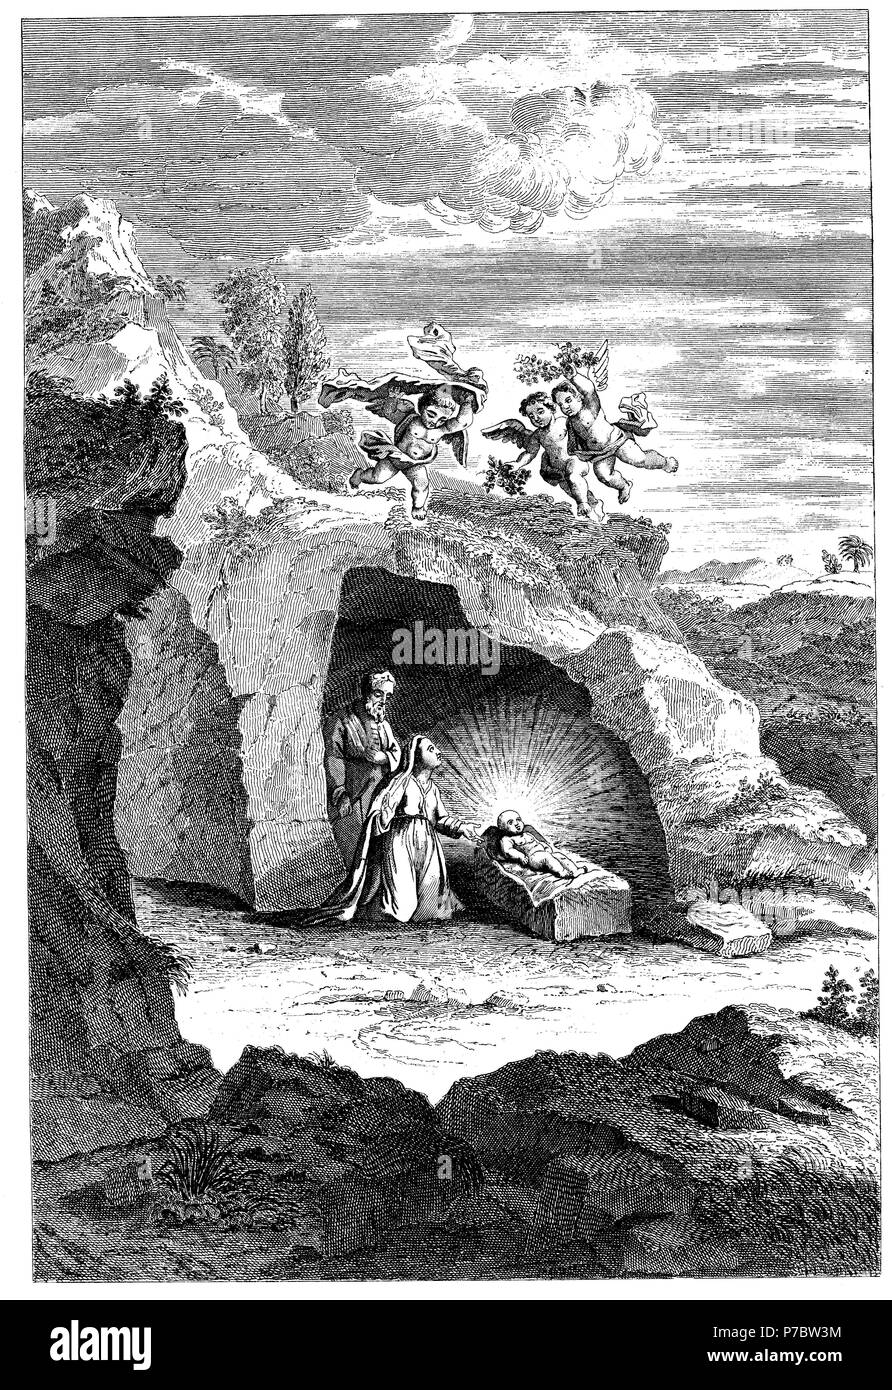 Historia sagrada. Vista de la cueva de Belén con el nacimiento de Jesús. Grabado de 1862. Stock Photo